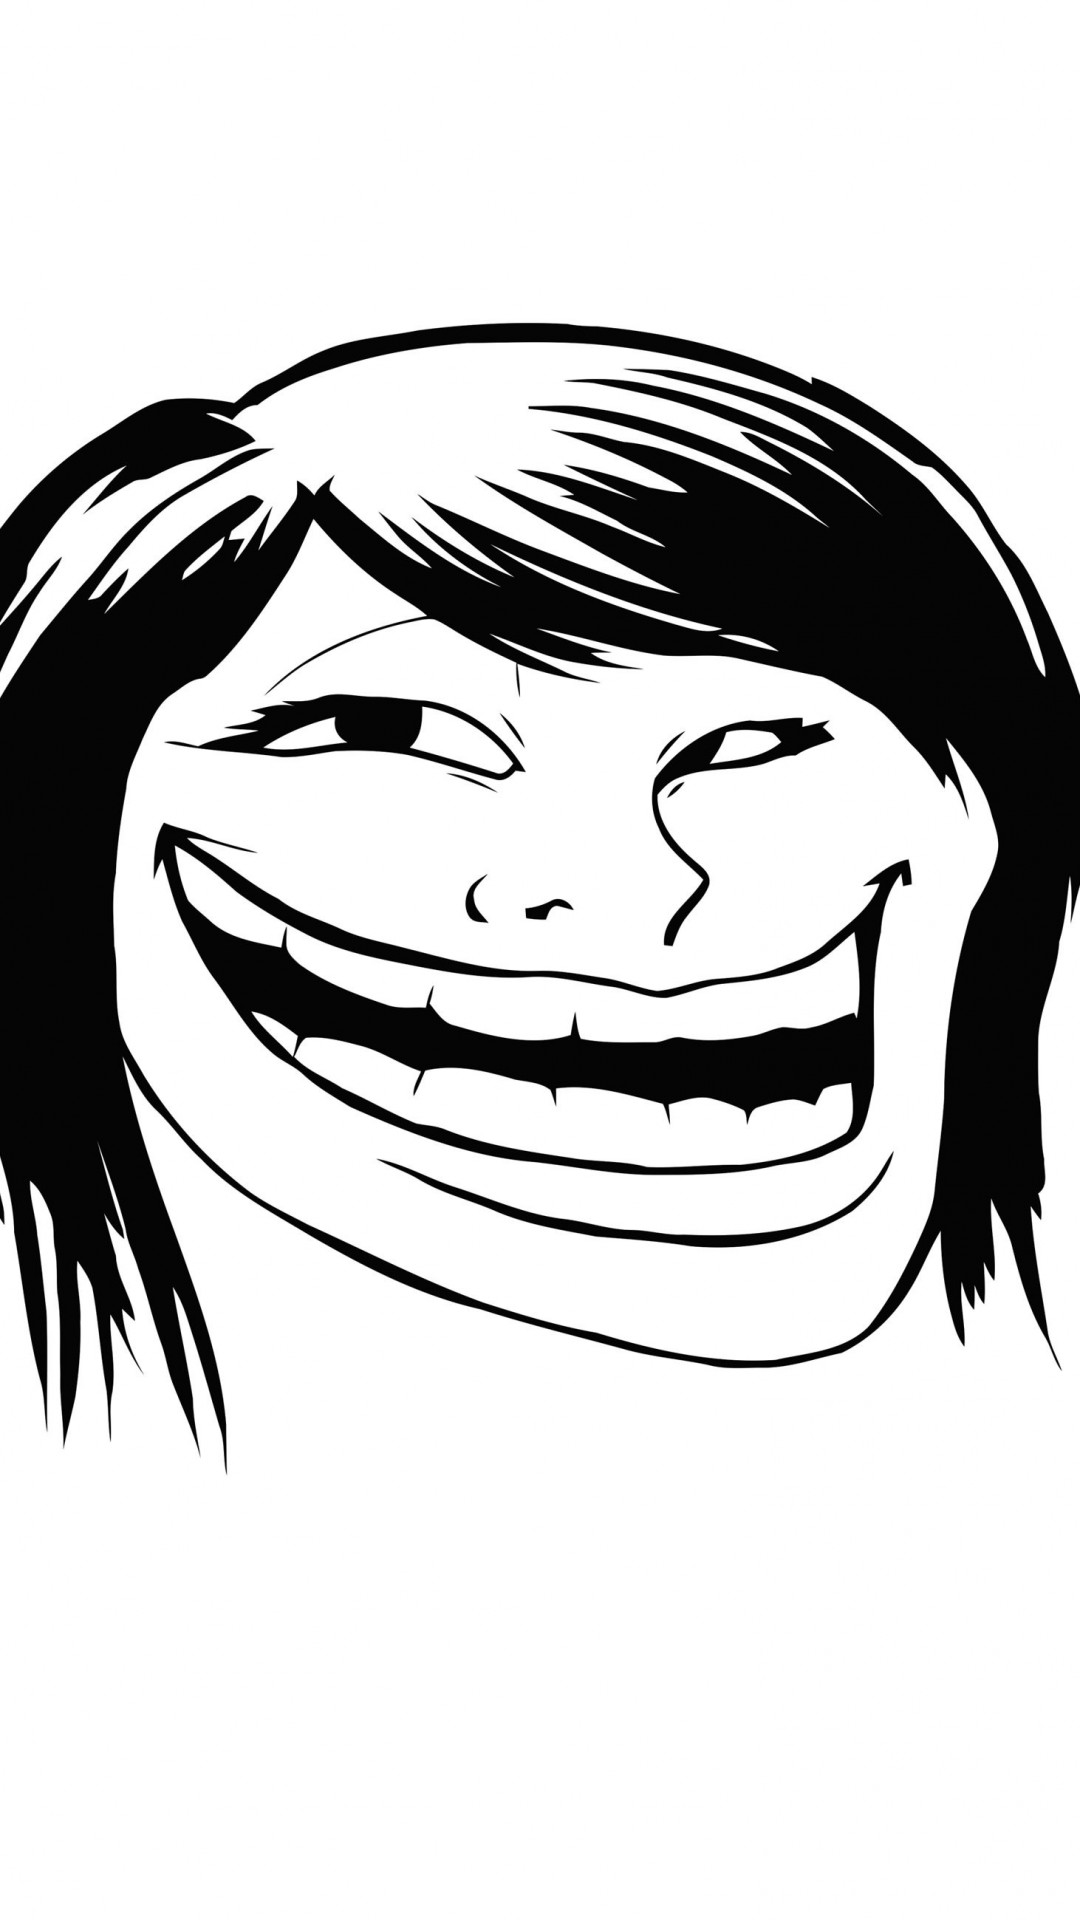 Female Troll Face Meme Wallpaper for Motorola Moto X